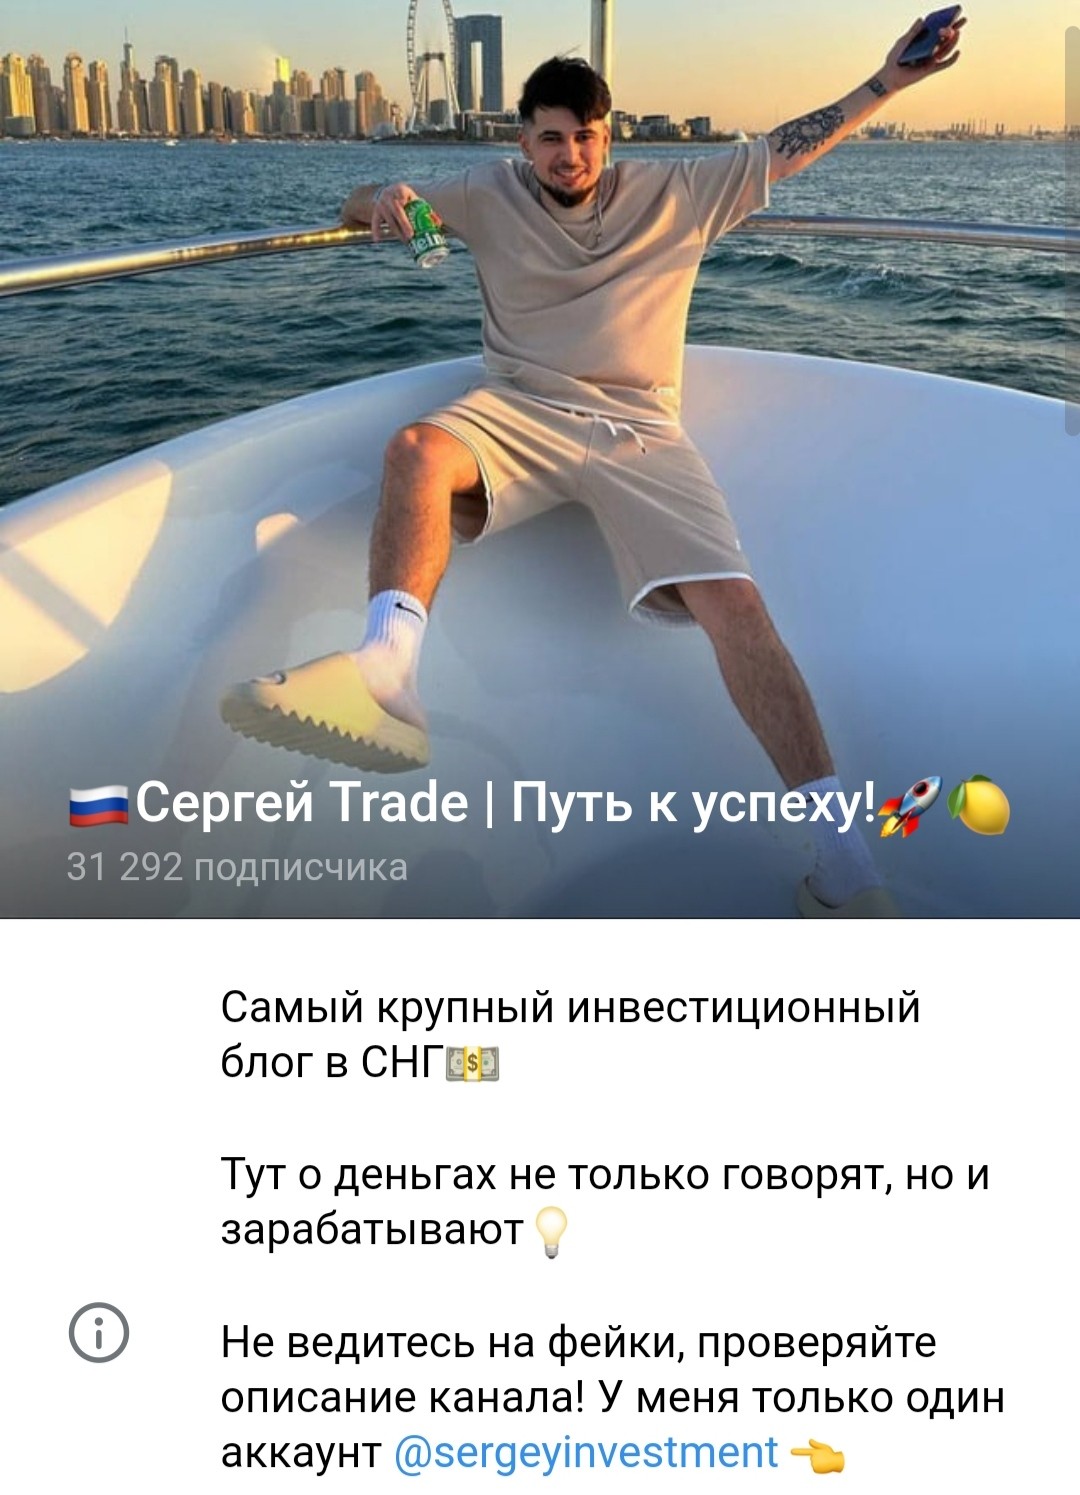 Телеграм Сергей Trade Путь к успеху